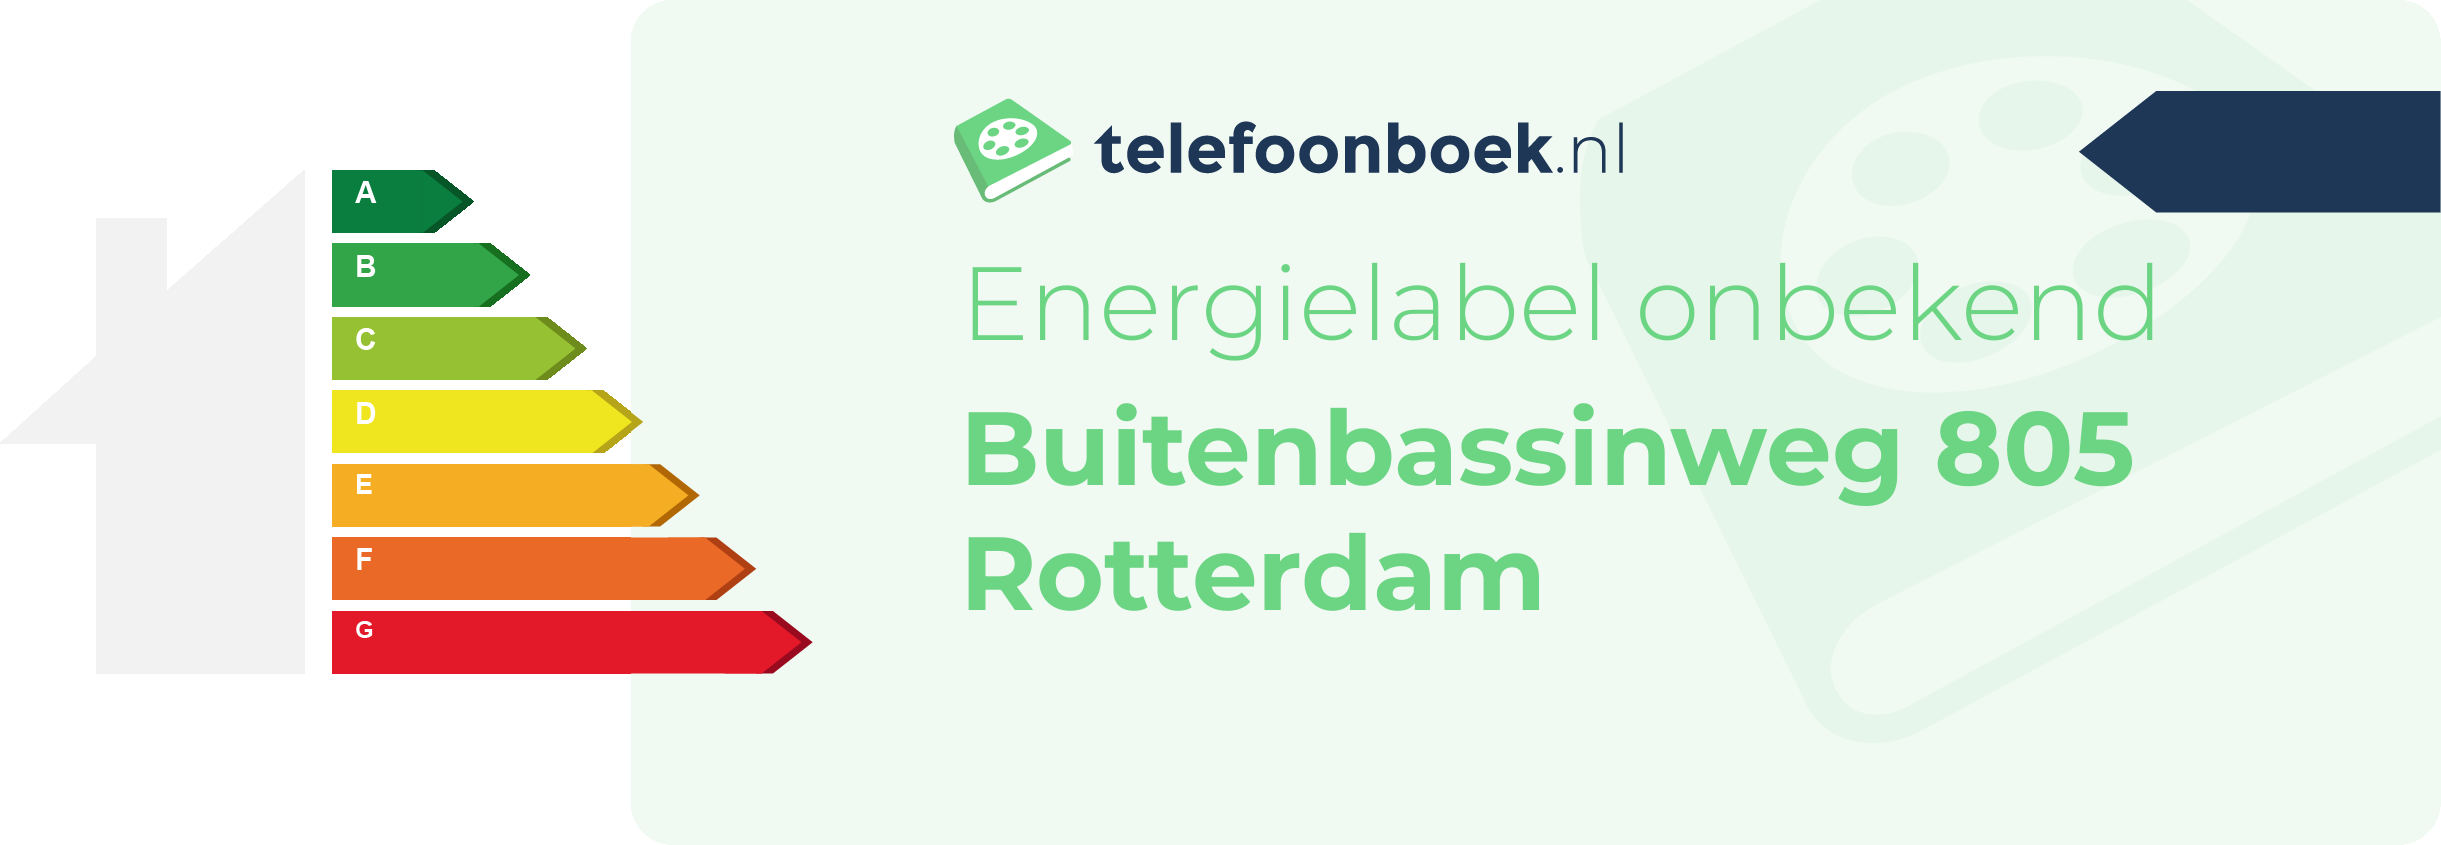 Energielabel Buitenbassinweg 805 Rotterdam